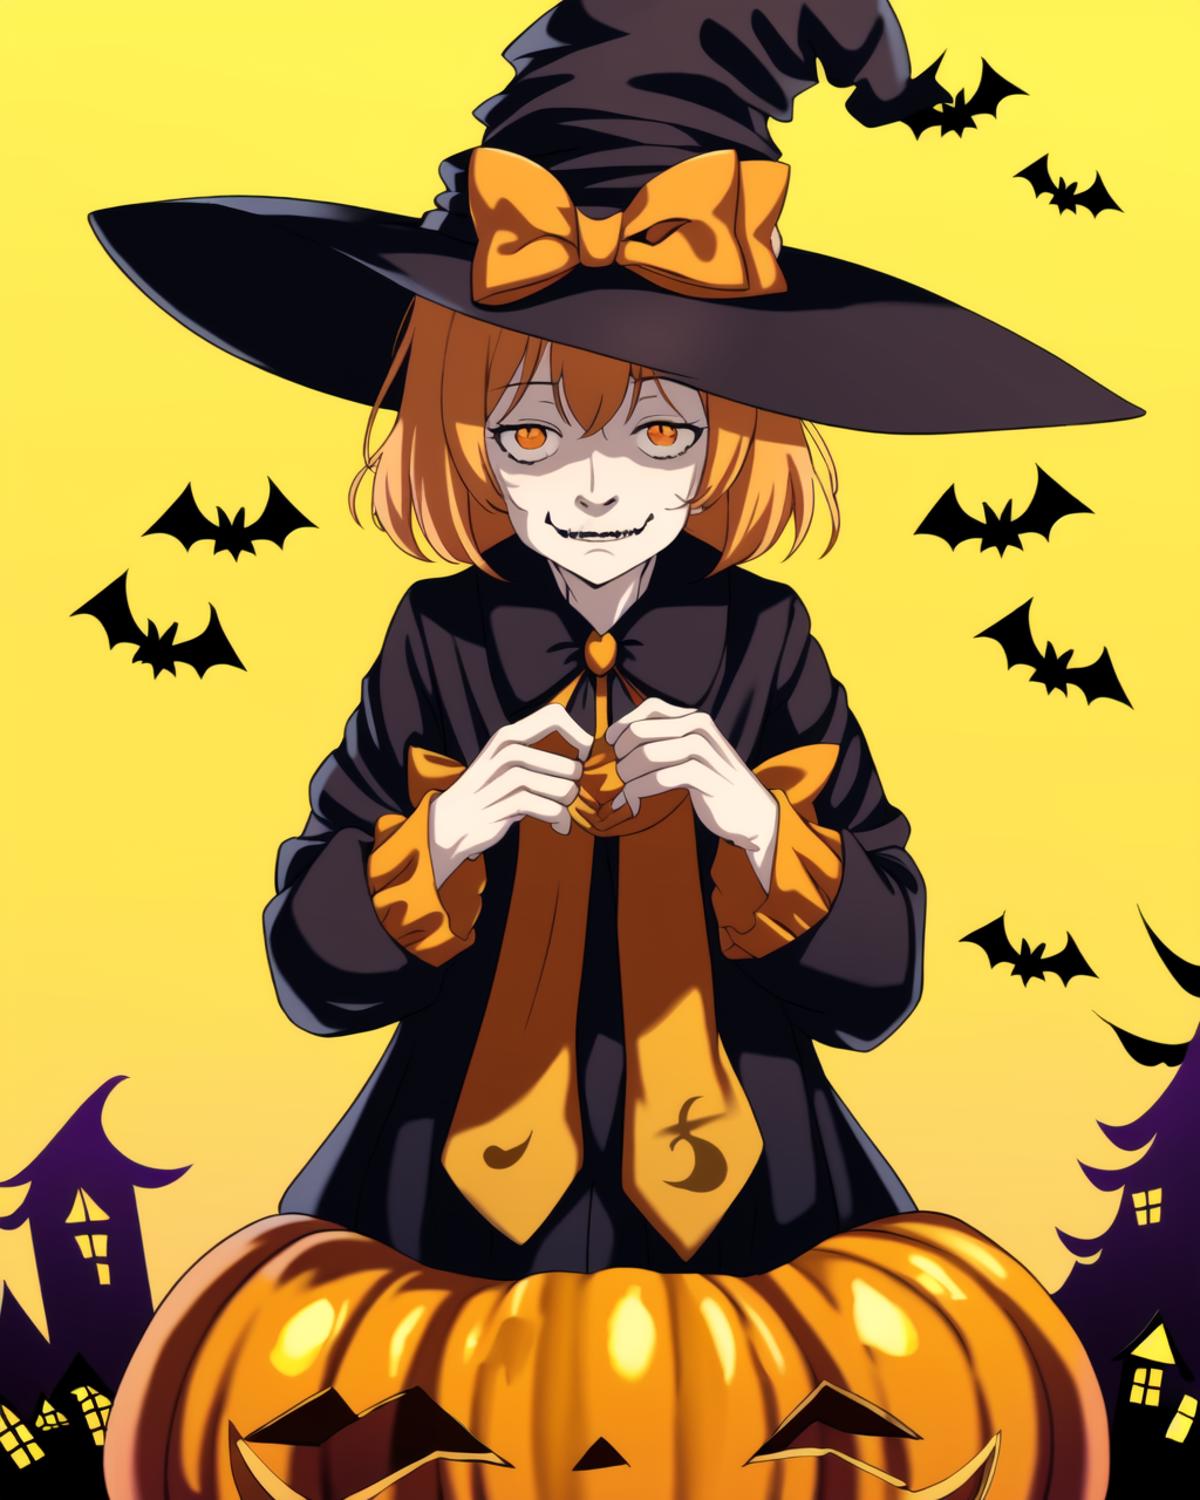 Orange Halloween witch image by Liquidn2